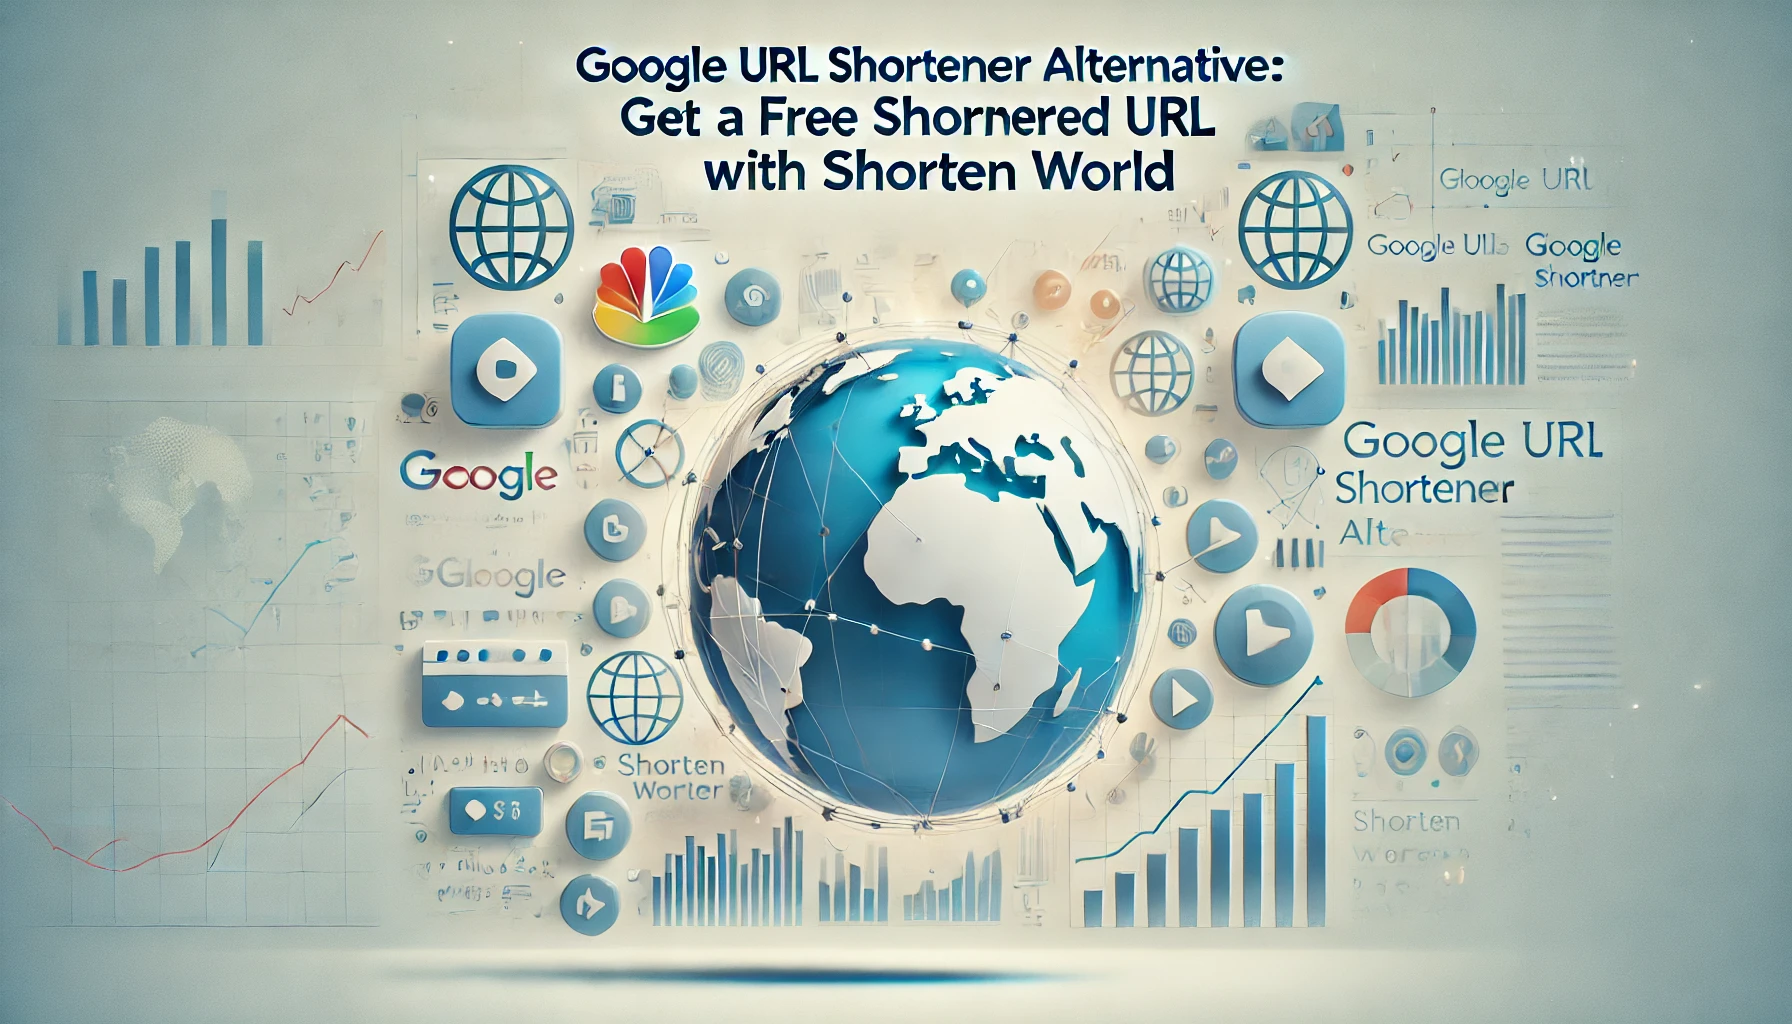 Google URL Shortener Alternative to Get a Free Shortened URL